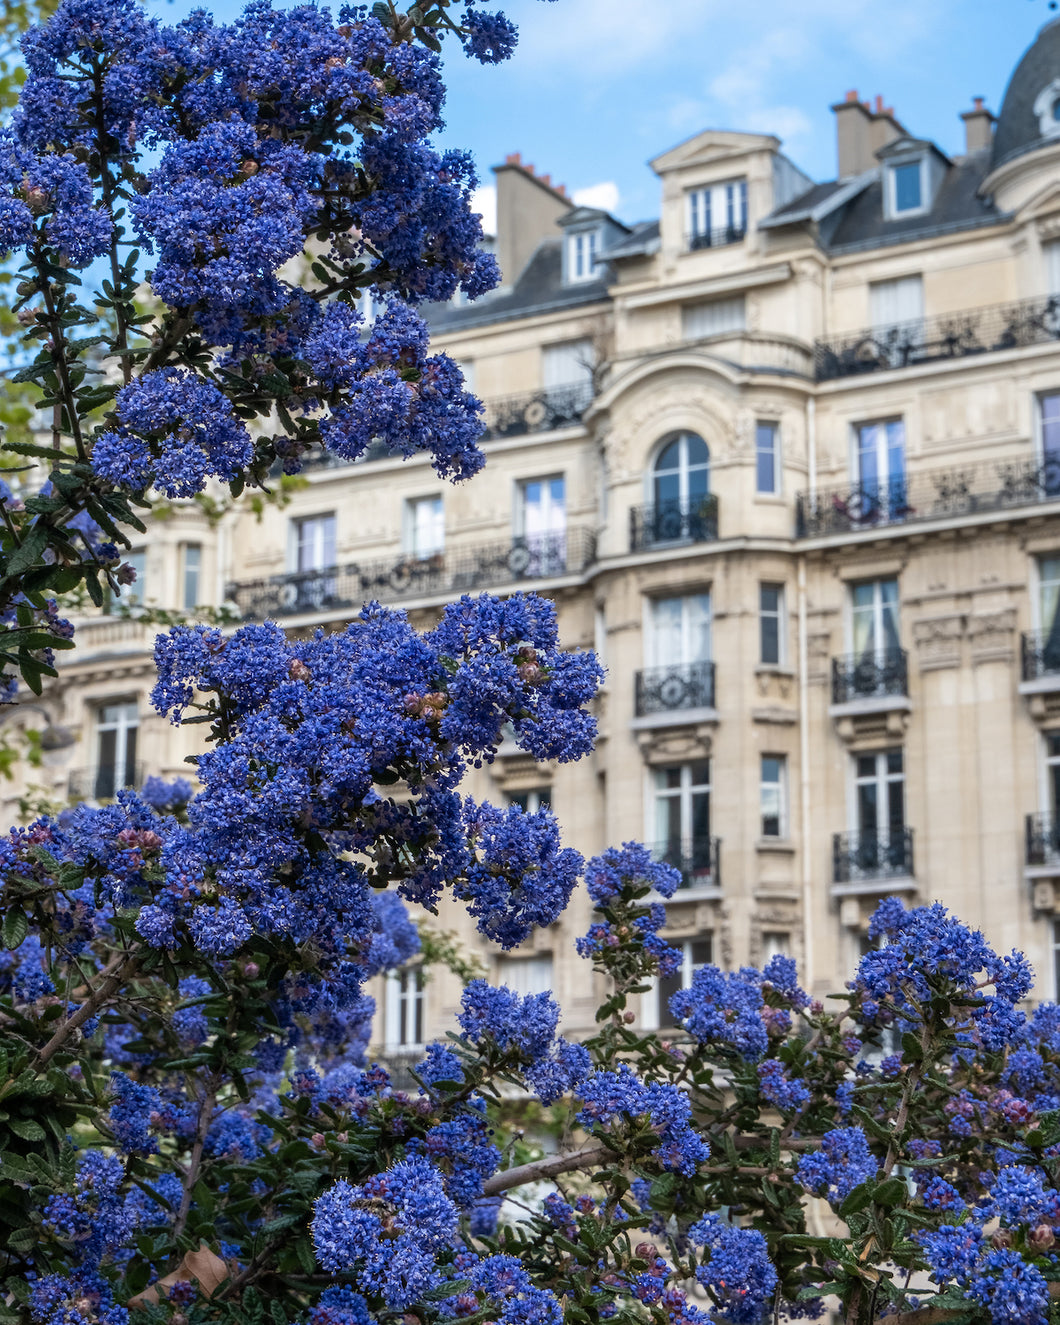 California Lilacs in Paris - Paris Photography - La Porte Bonheur